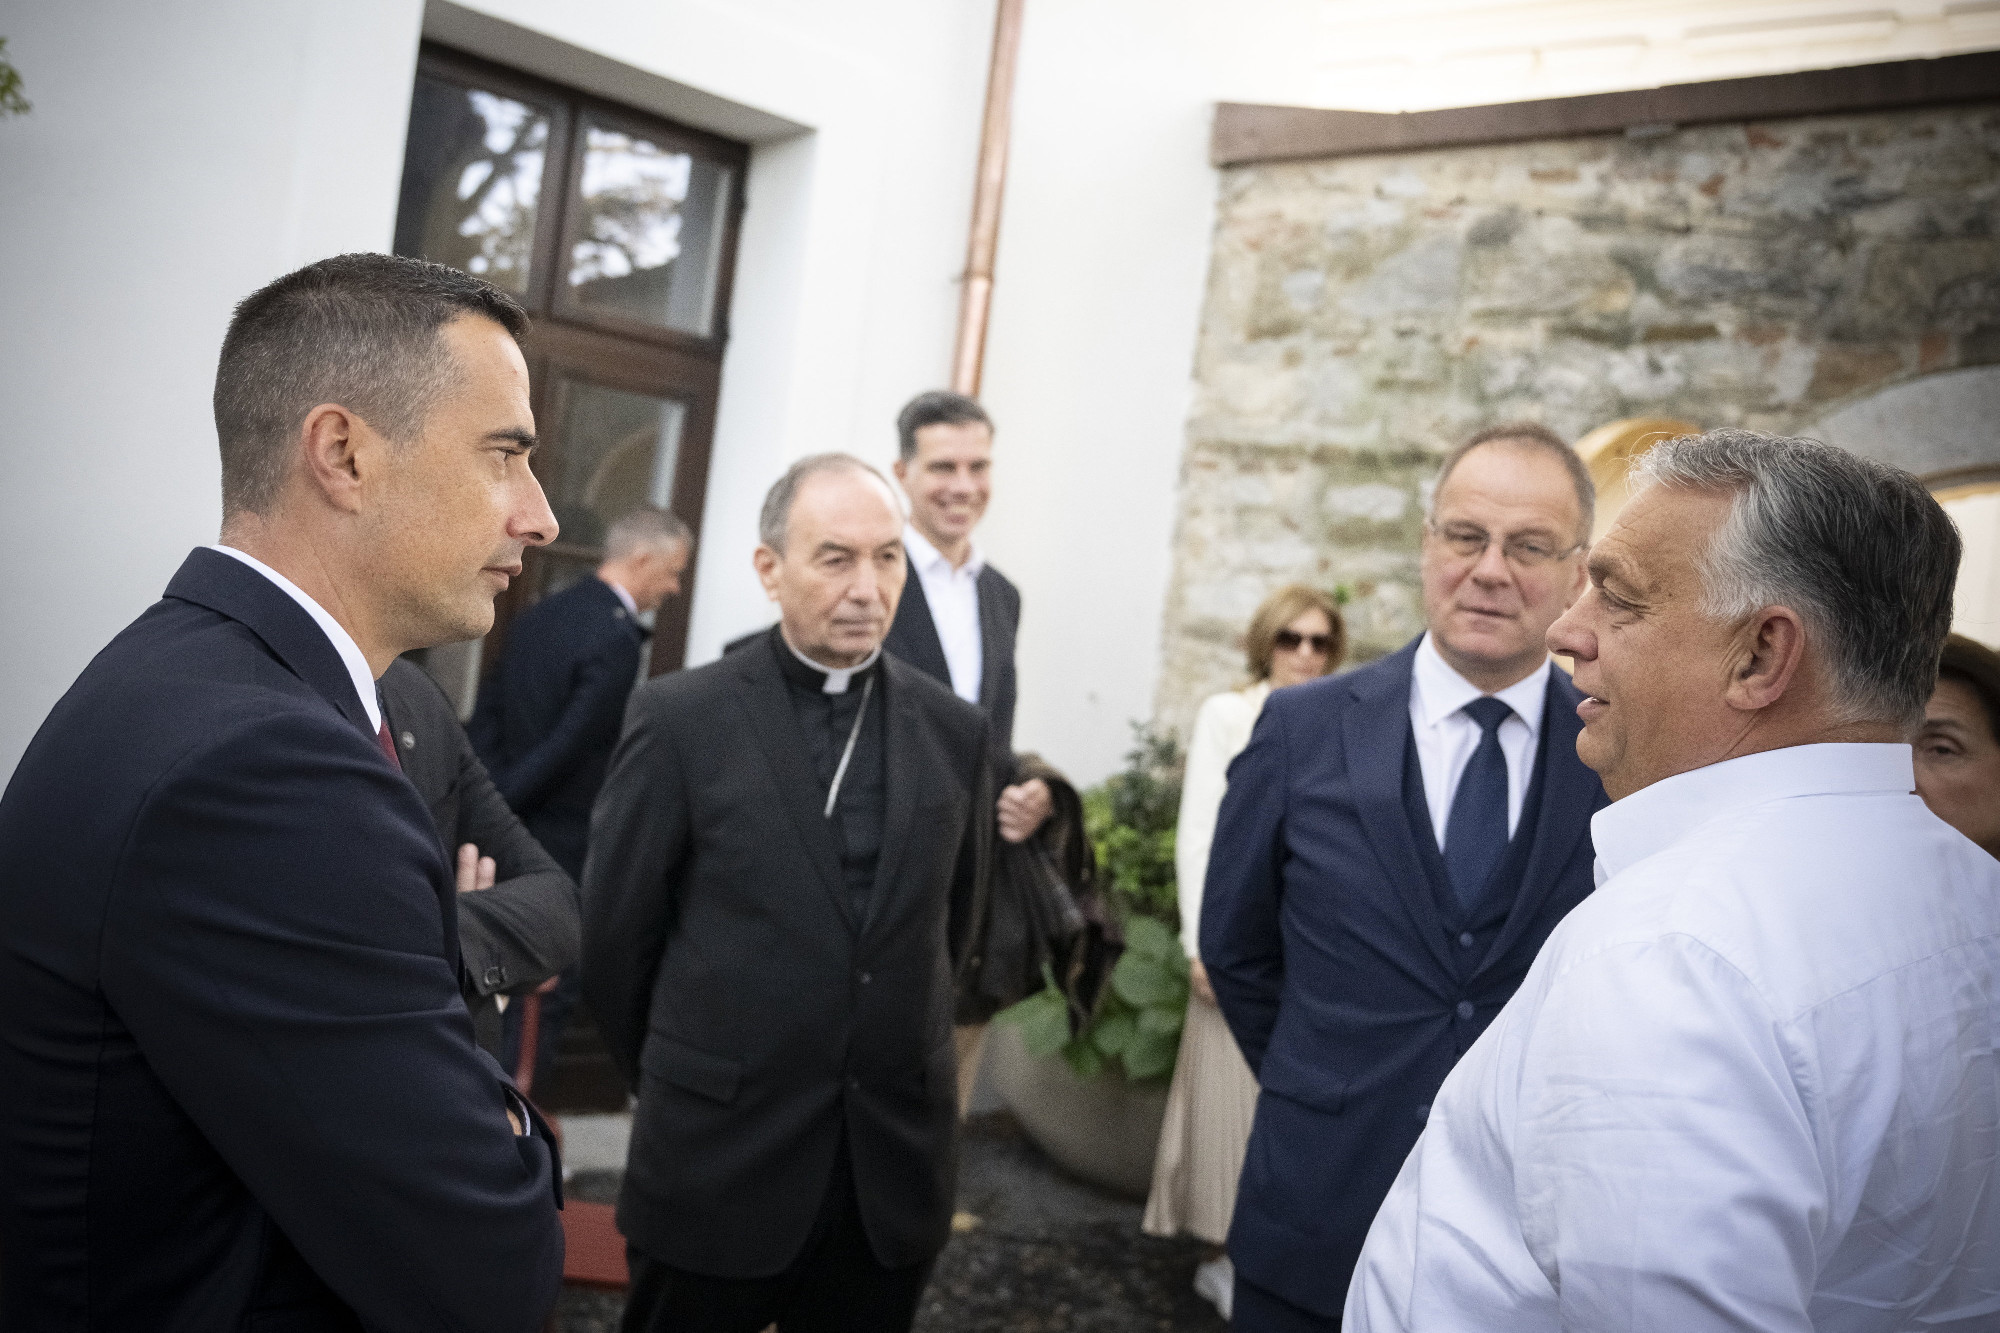 Október 23: egyszerre ért Veszprémbe Orbán Viktor és a Momentum